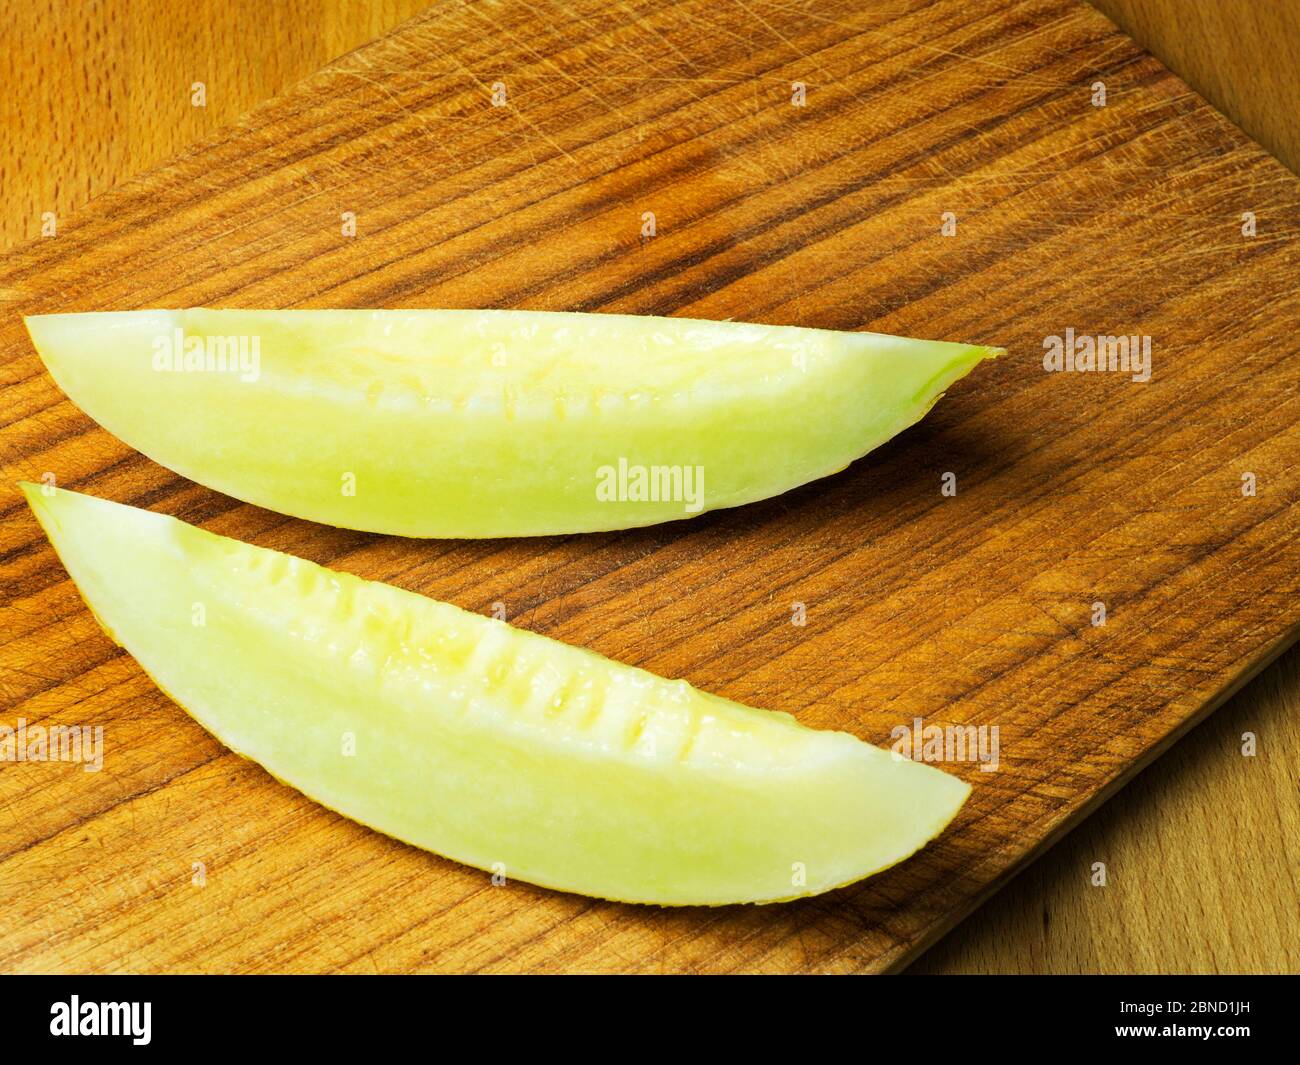 Zwei Scheiben kanarienmelone auf einem Holzhackbrett Stockfoto